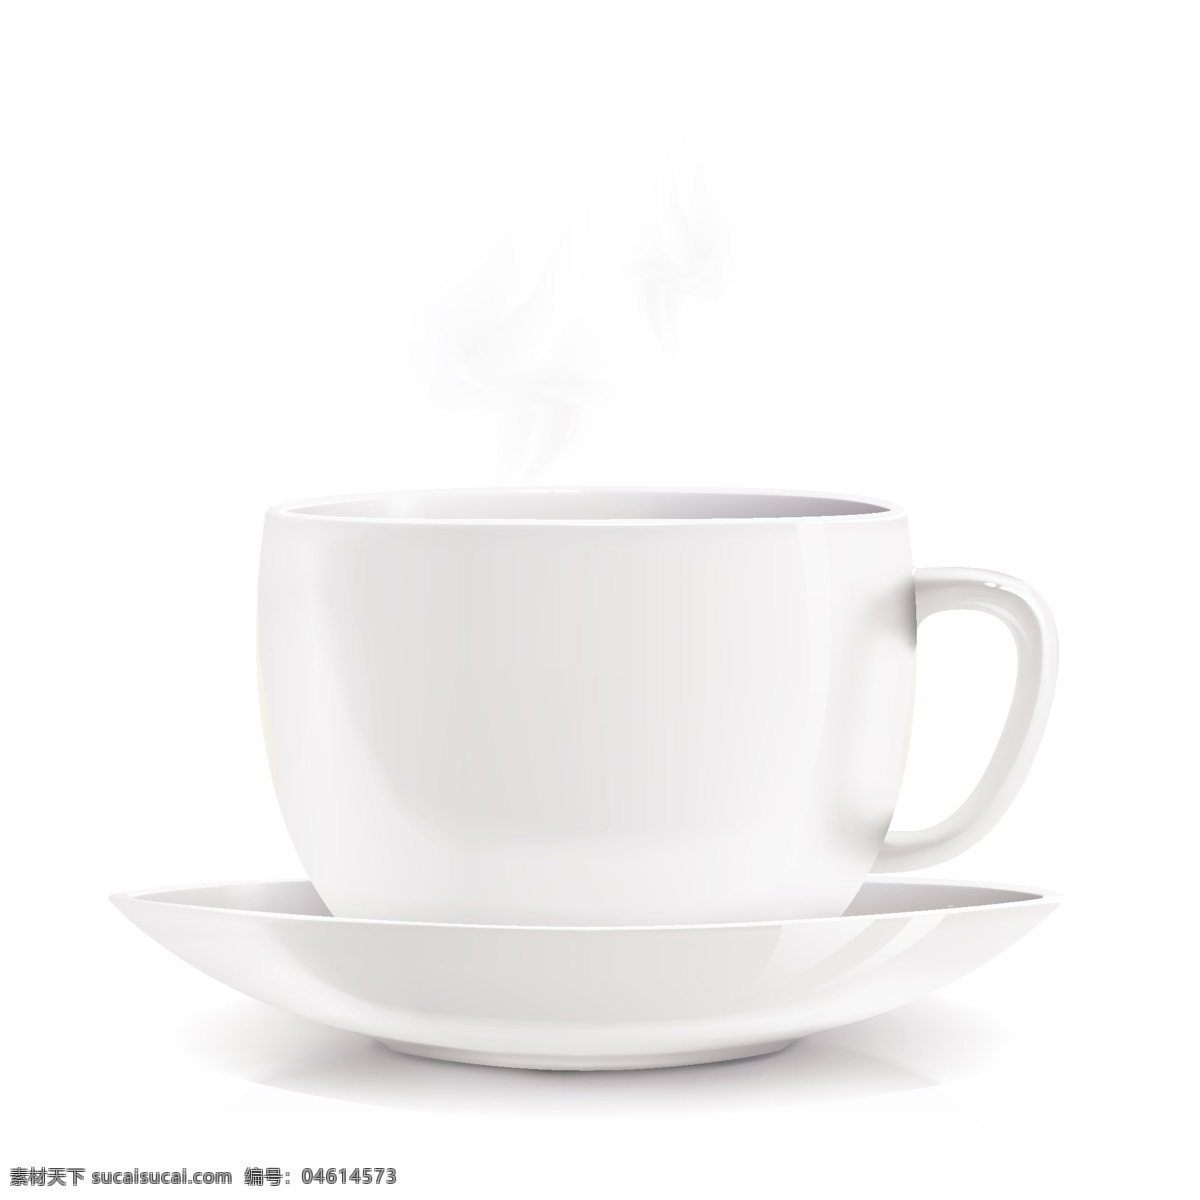 白杯子 白色 白色的杯 杯杯 剪贴 画 黑色 杯 白杯向量 向量白杯 咖啡杯的白色 孤立白杯 咖啡杯 矢量 白色的咖啡杯 杯杯矢量白 矢量图 其他矢量图